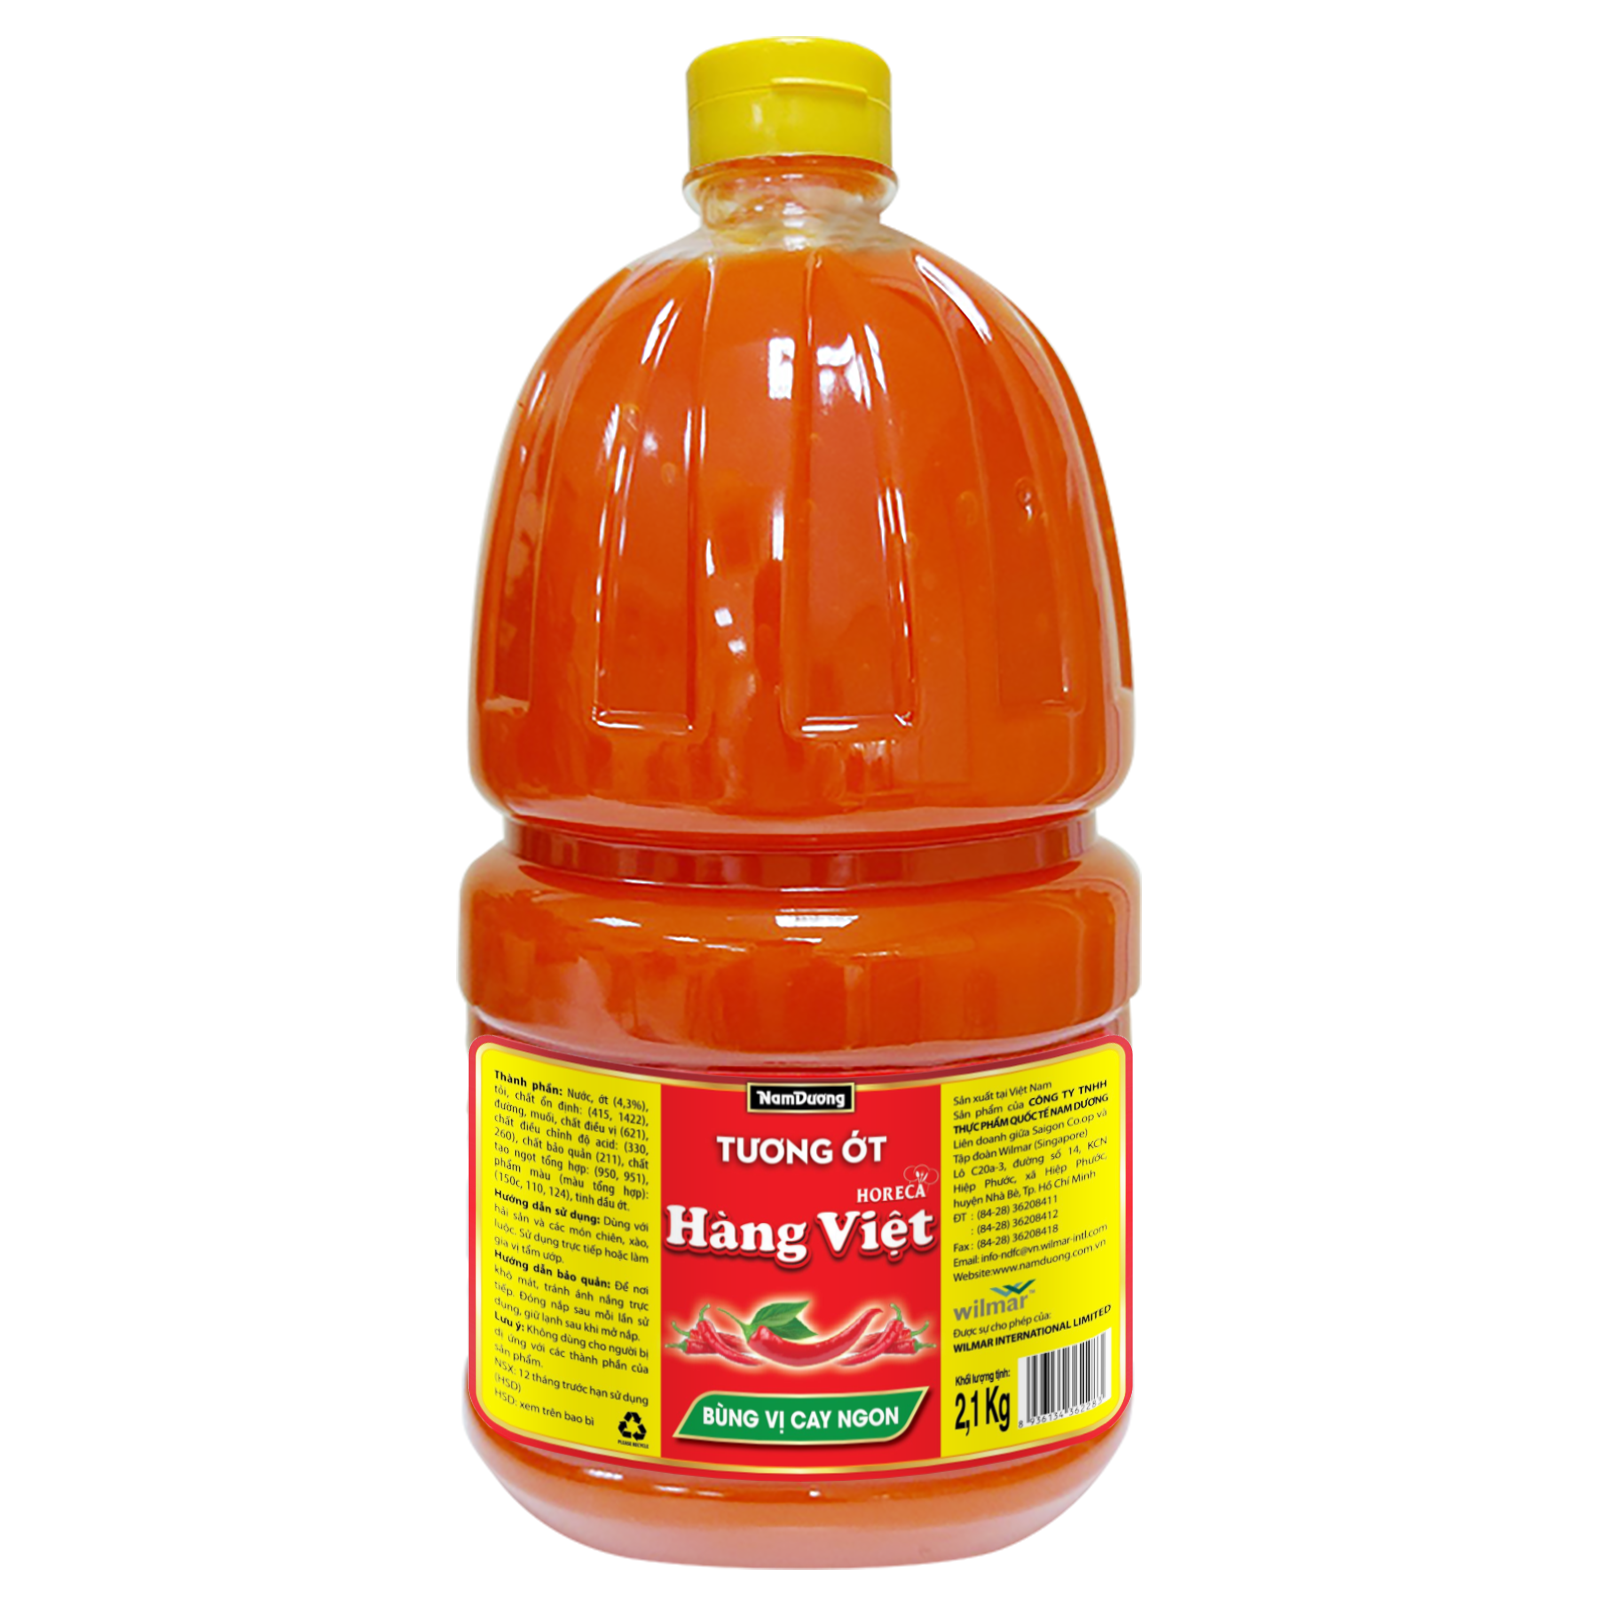 Hang Viet Horeca Chili Sauce